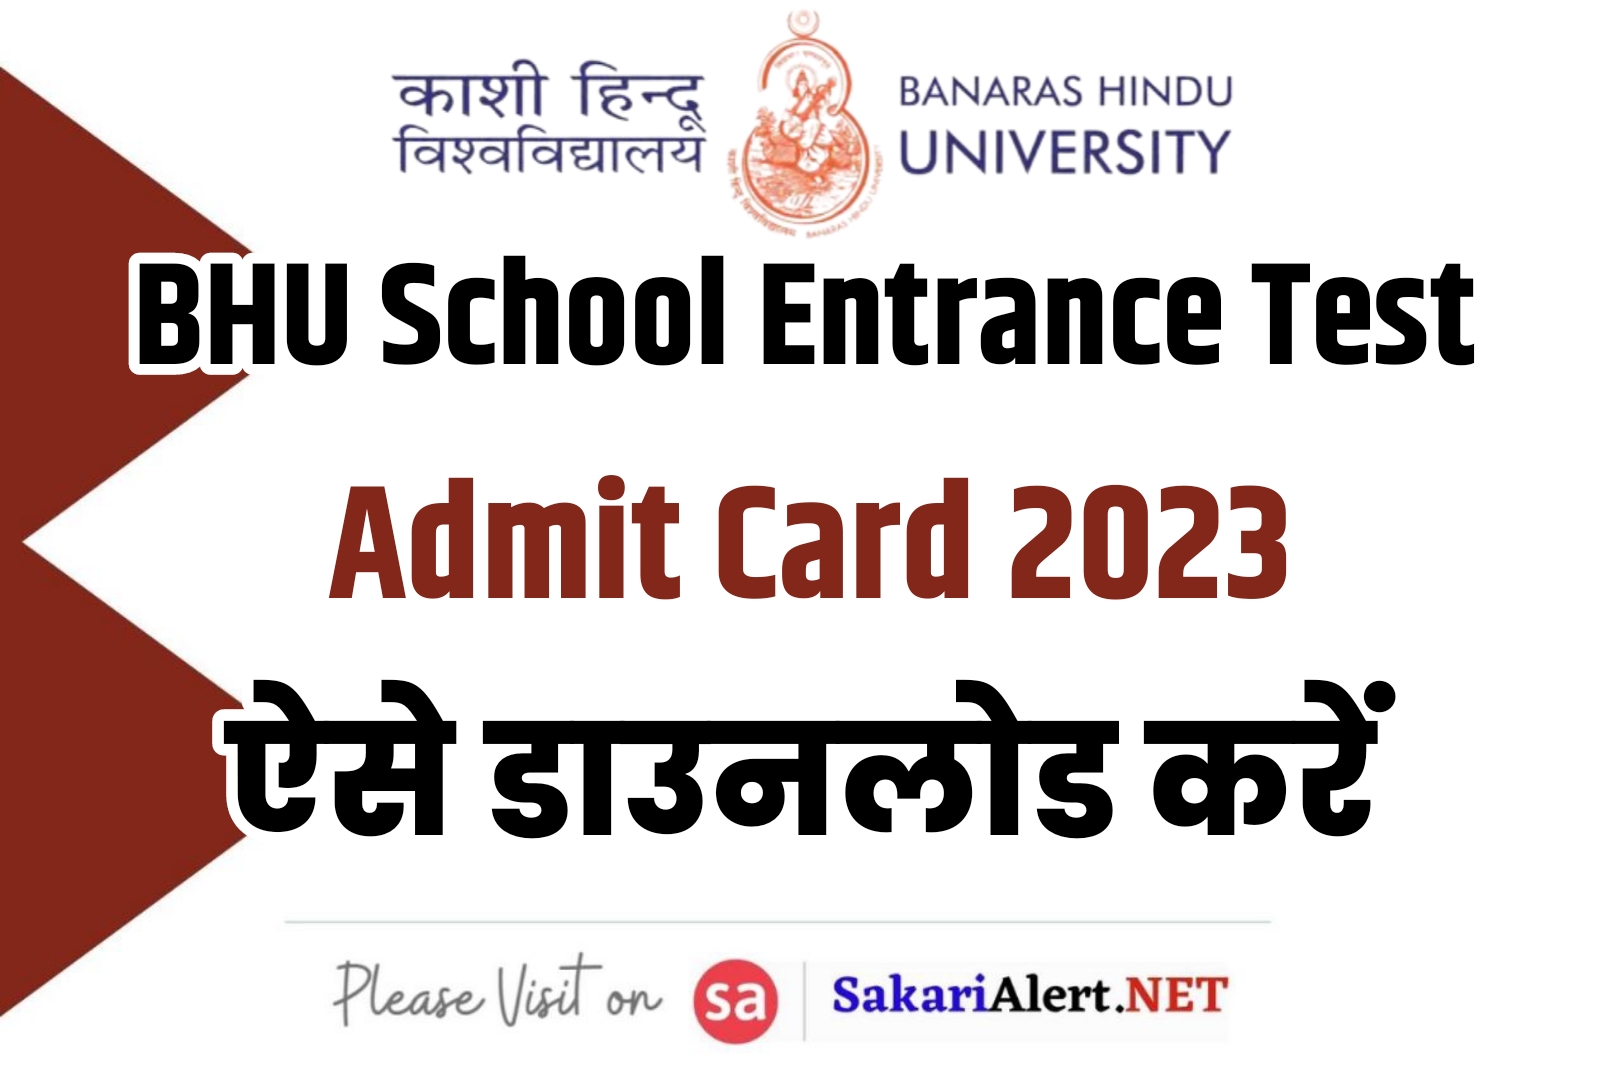 BHU School Entrance Test Admit Card 2023